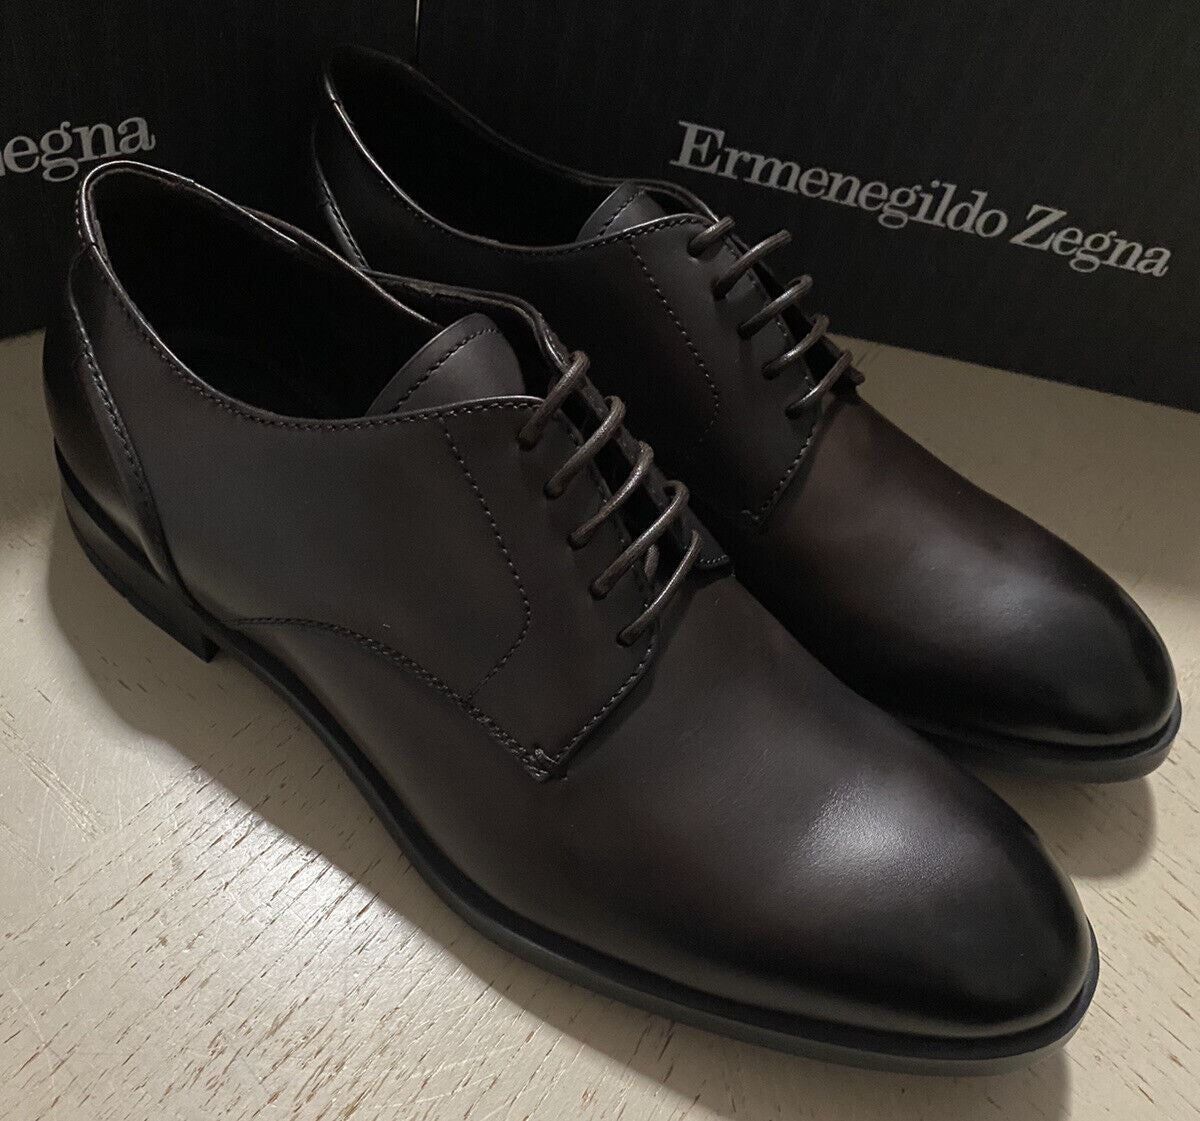 New $675 Ermenegildo Zegna Dress Shoes MD Brown 11 US ( 44 Eu ) Italy